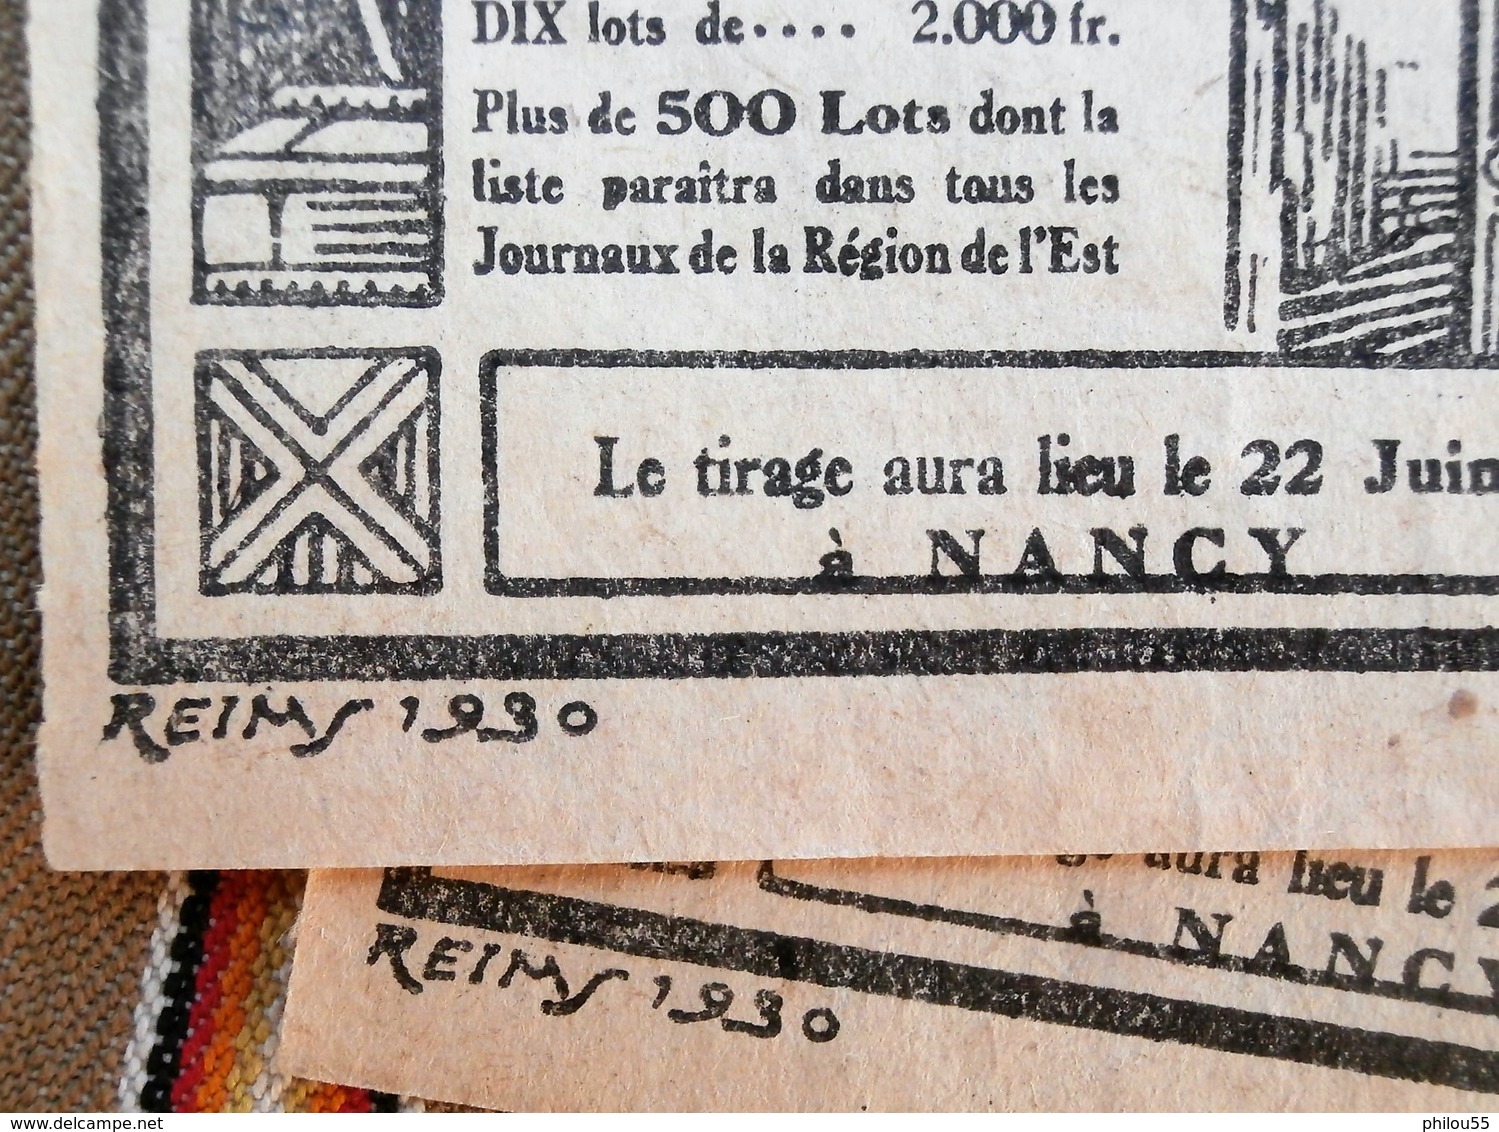 2 Billets De TOMBOLA Reims Nancy Strasbourg 1930 PRESSE DE L'EST - Billets De Loterie